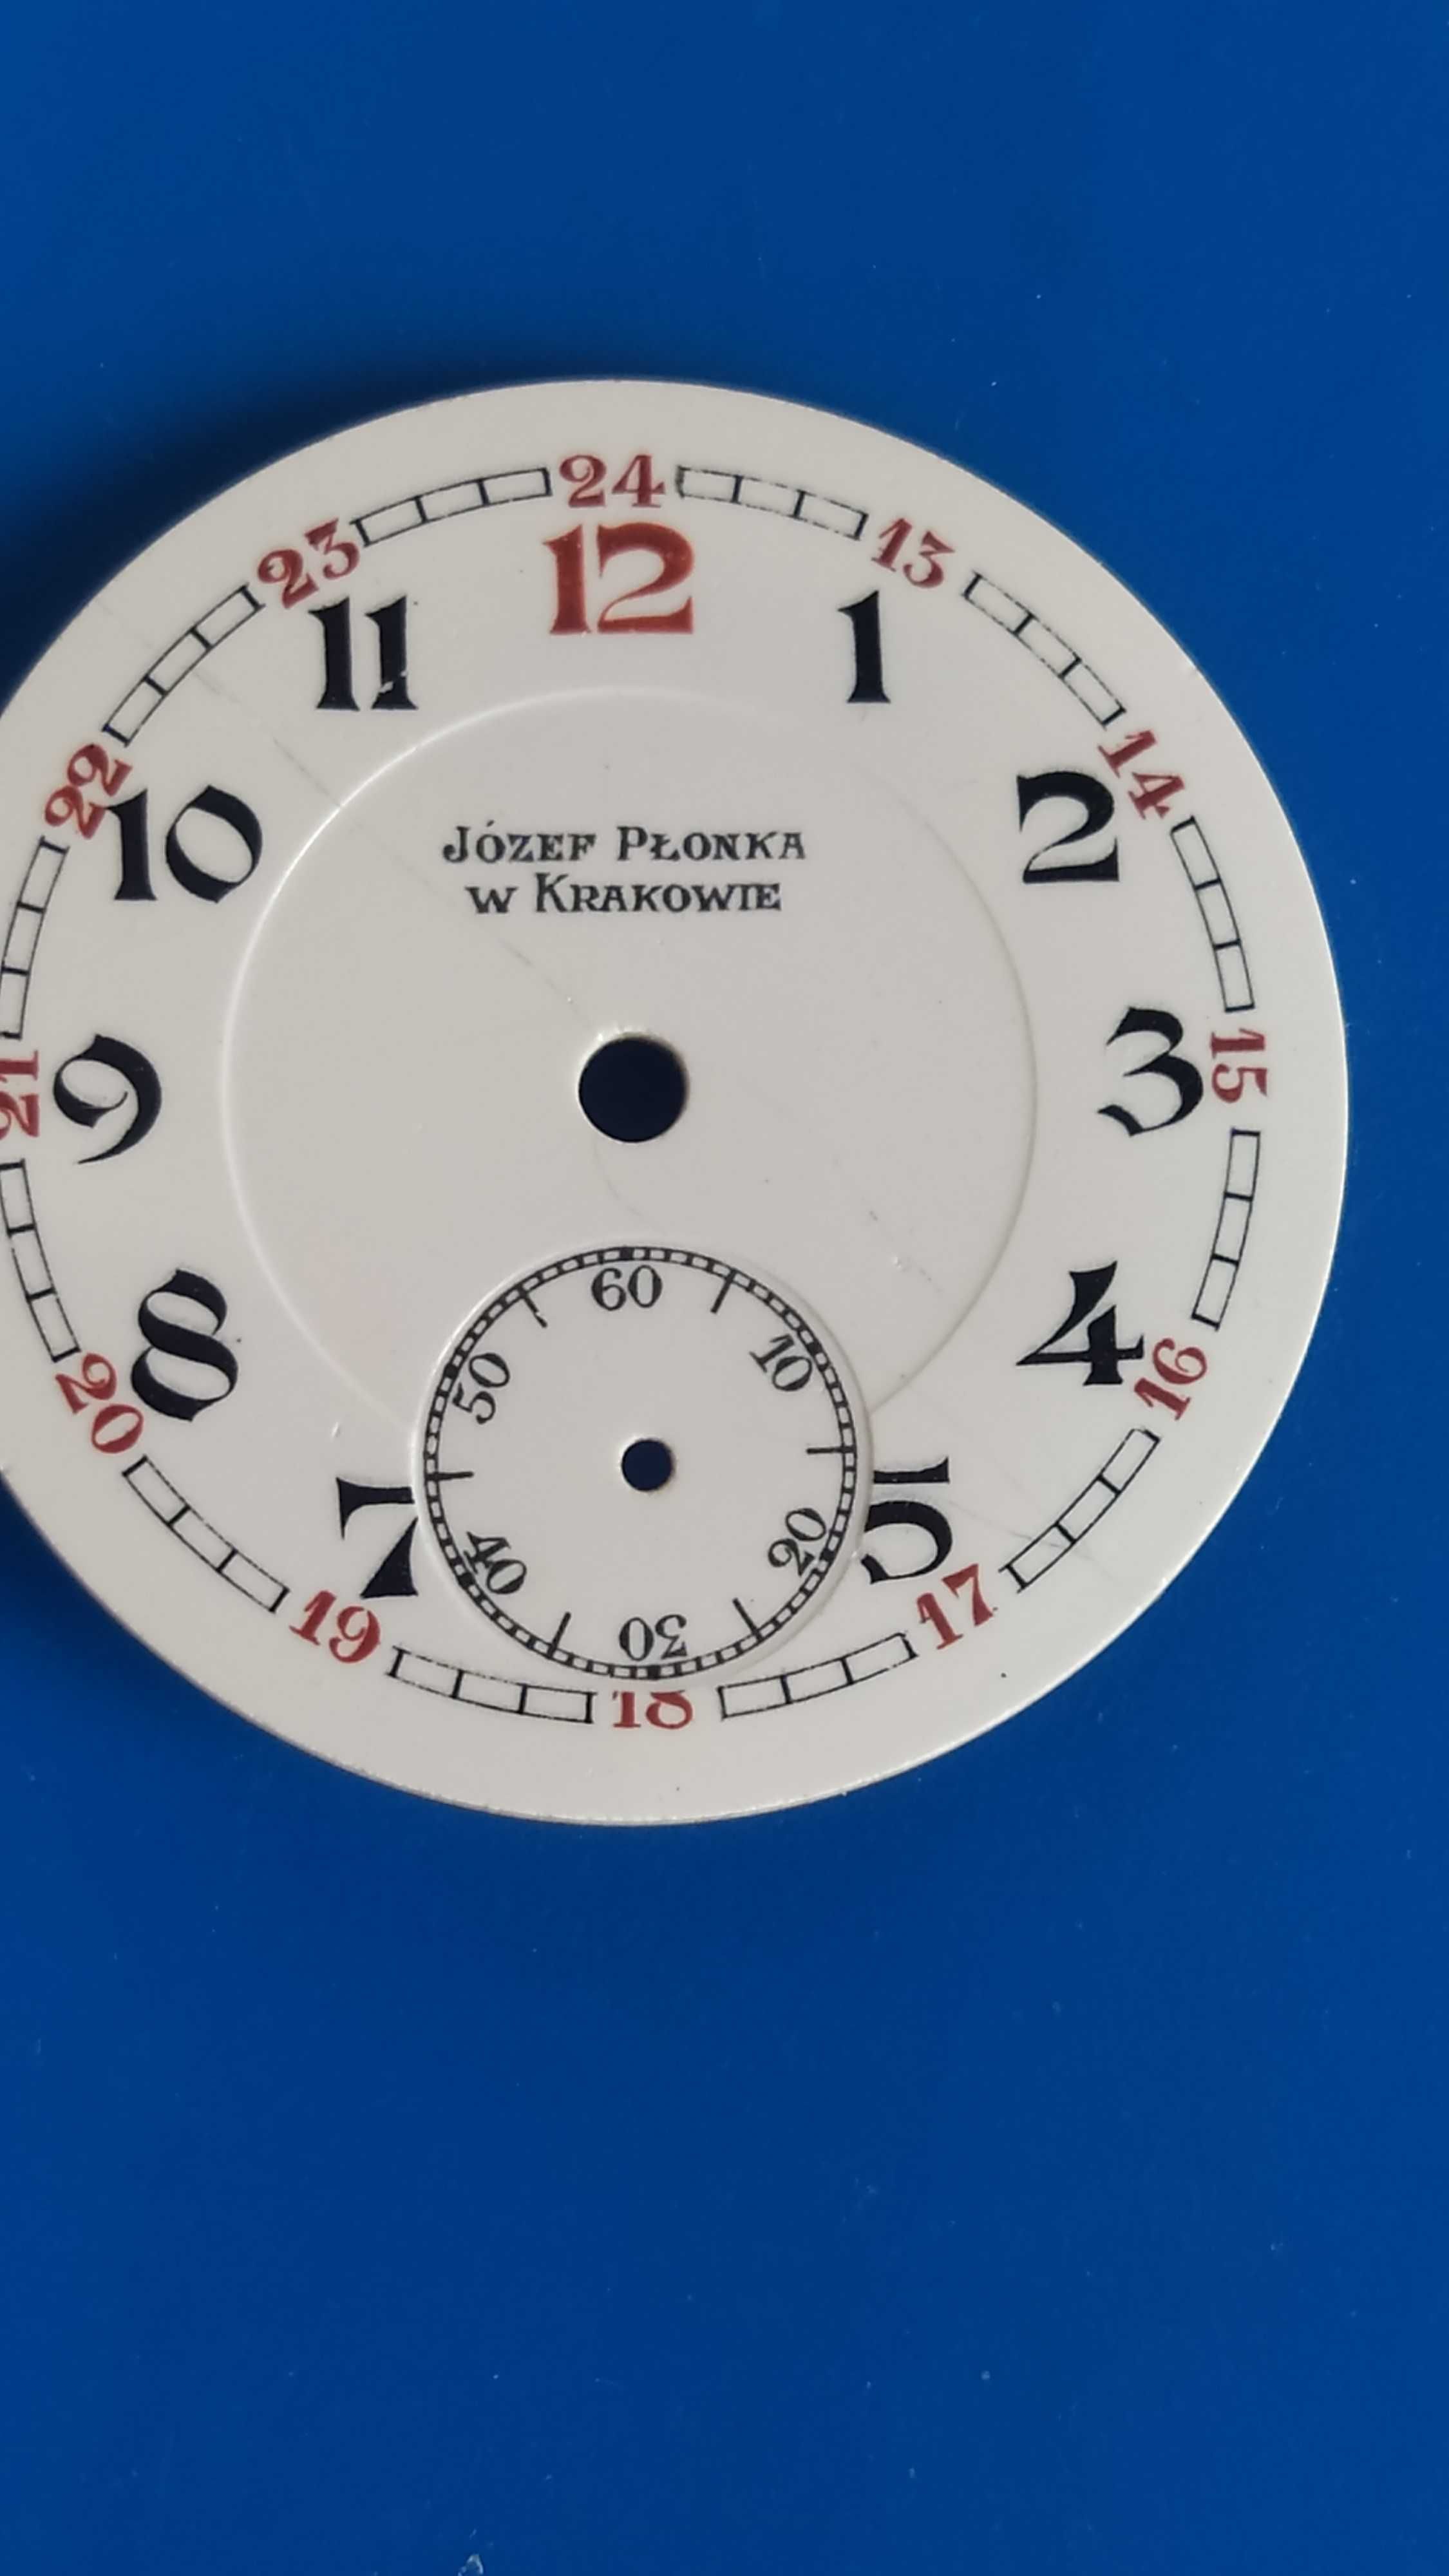 Józef Płonka w Krakowie,porcelanowa tarcza,zegarek kieszonkowy,antyk